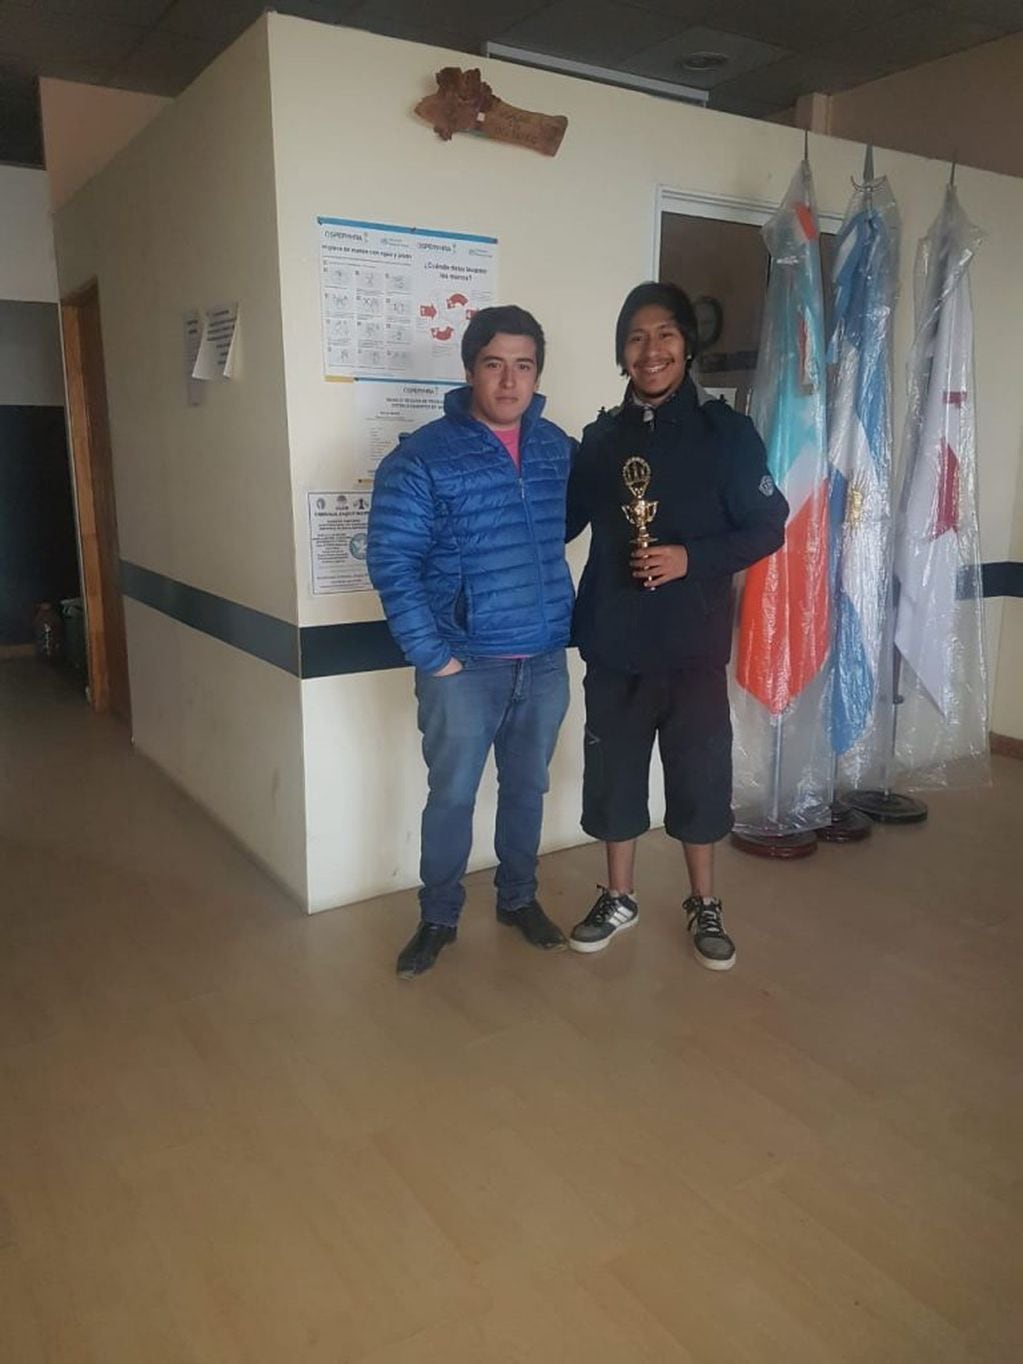 Jurado Darío, uno de los ganadores del Torneo Ajedrez "Aniversario de Ushuaia".